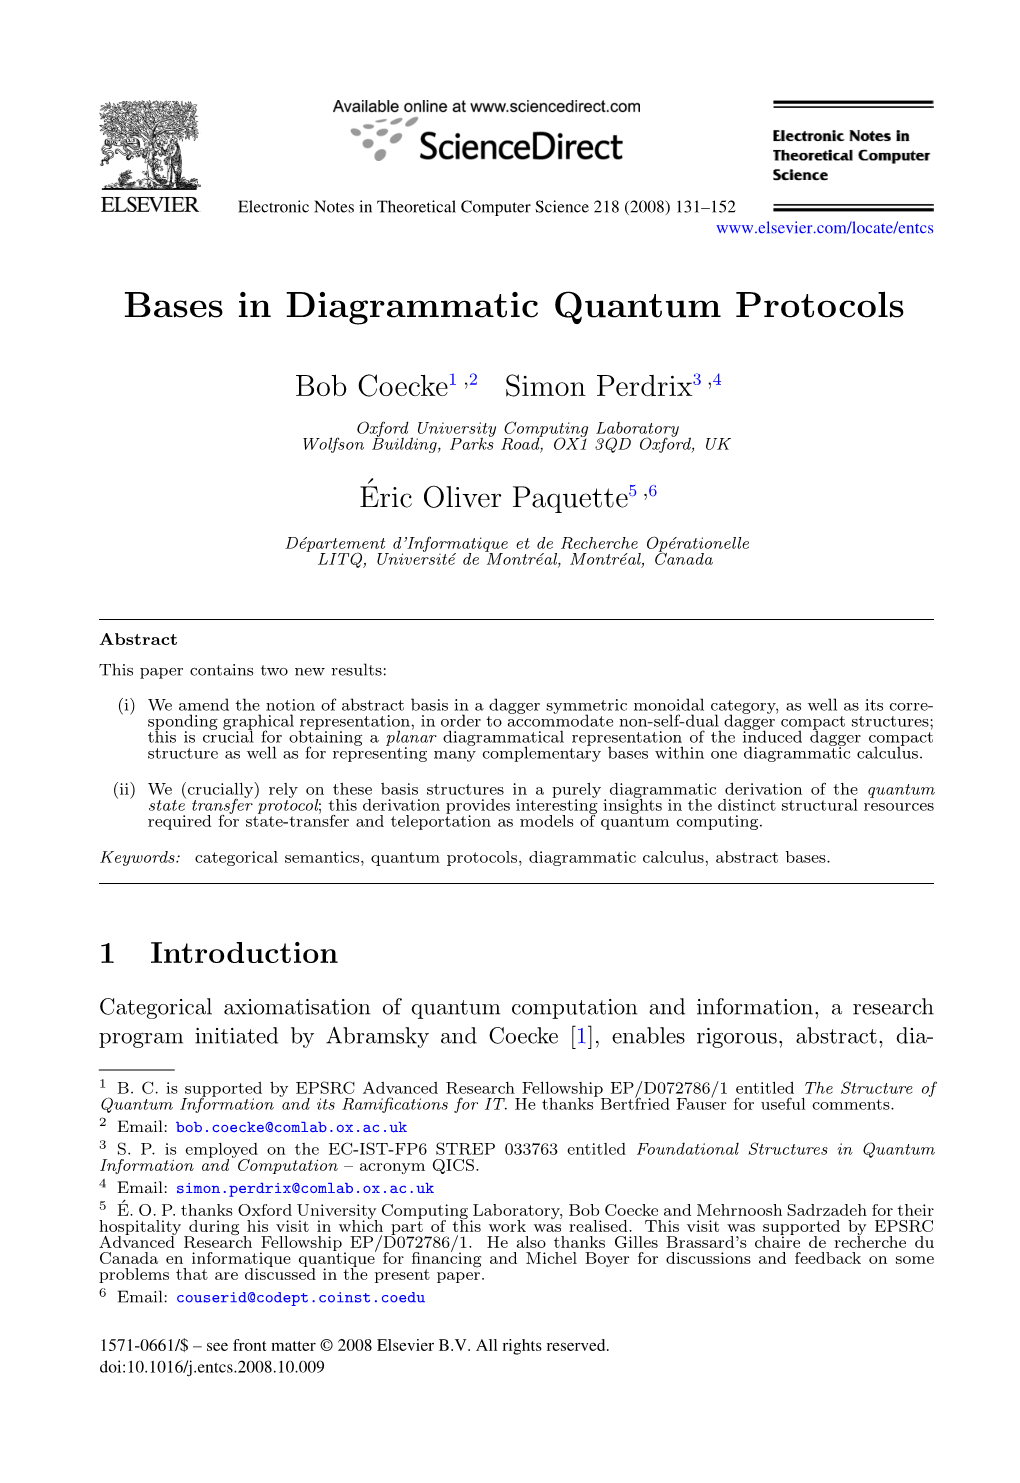 Bases in Diagrammatic Quantum Protocols